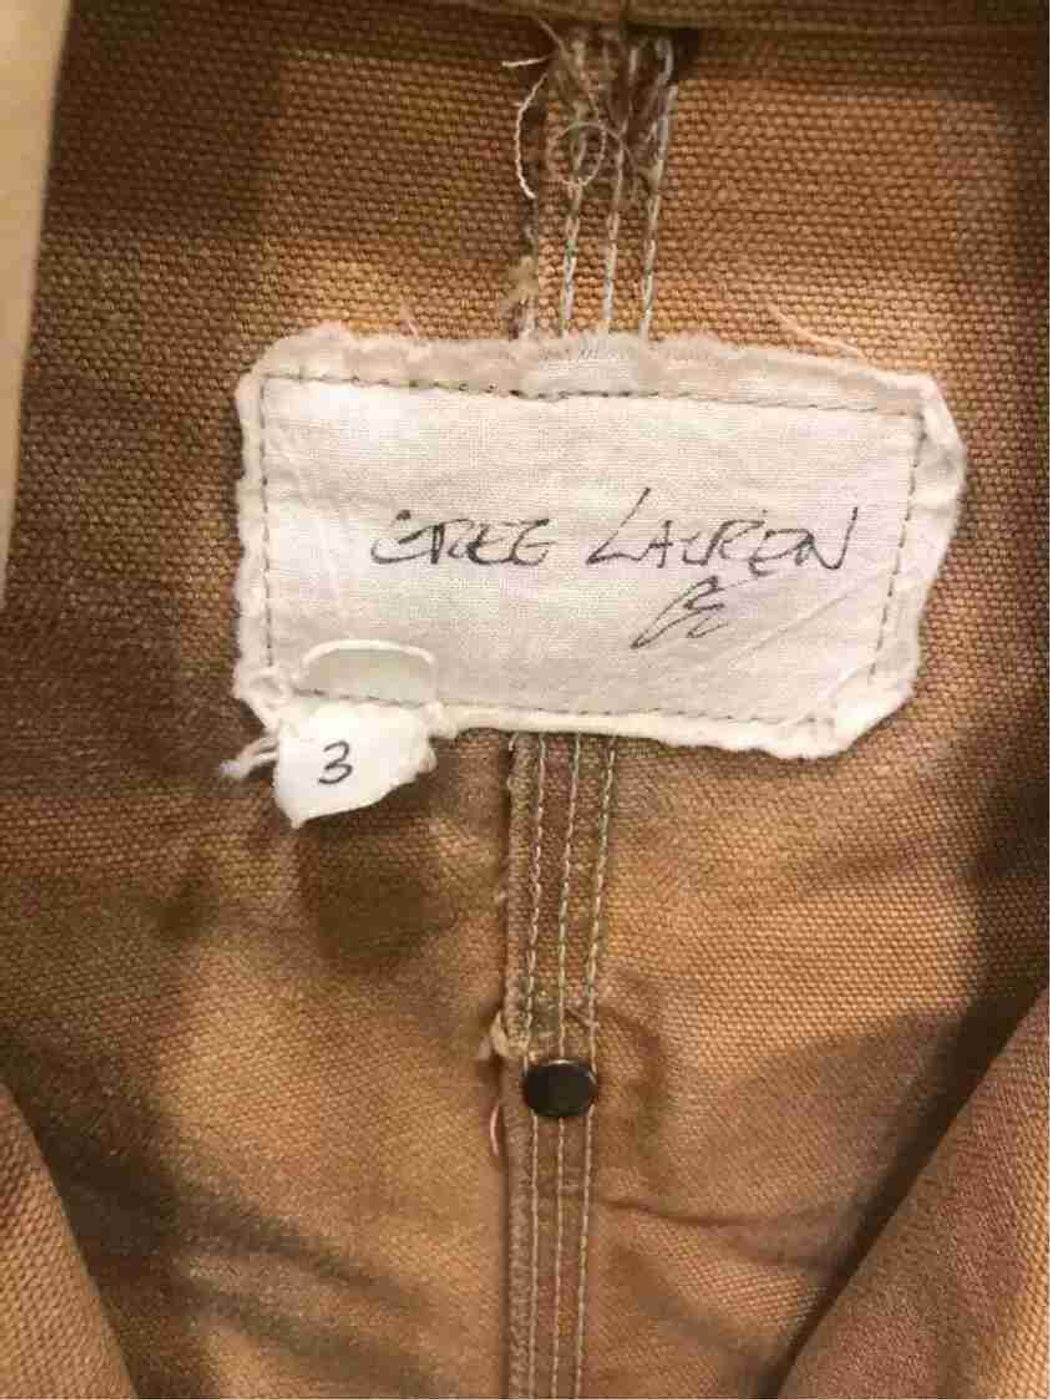 Greg Lauren Original New Jacket Size 3